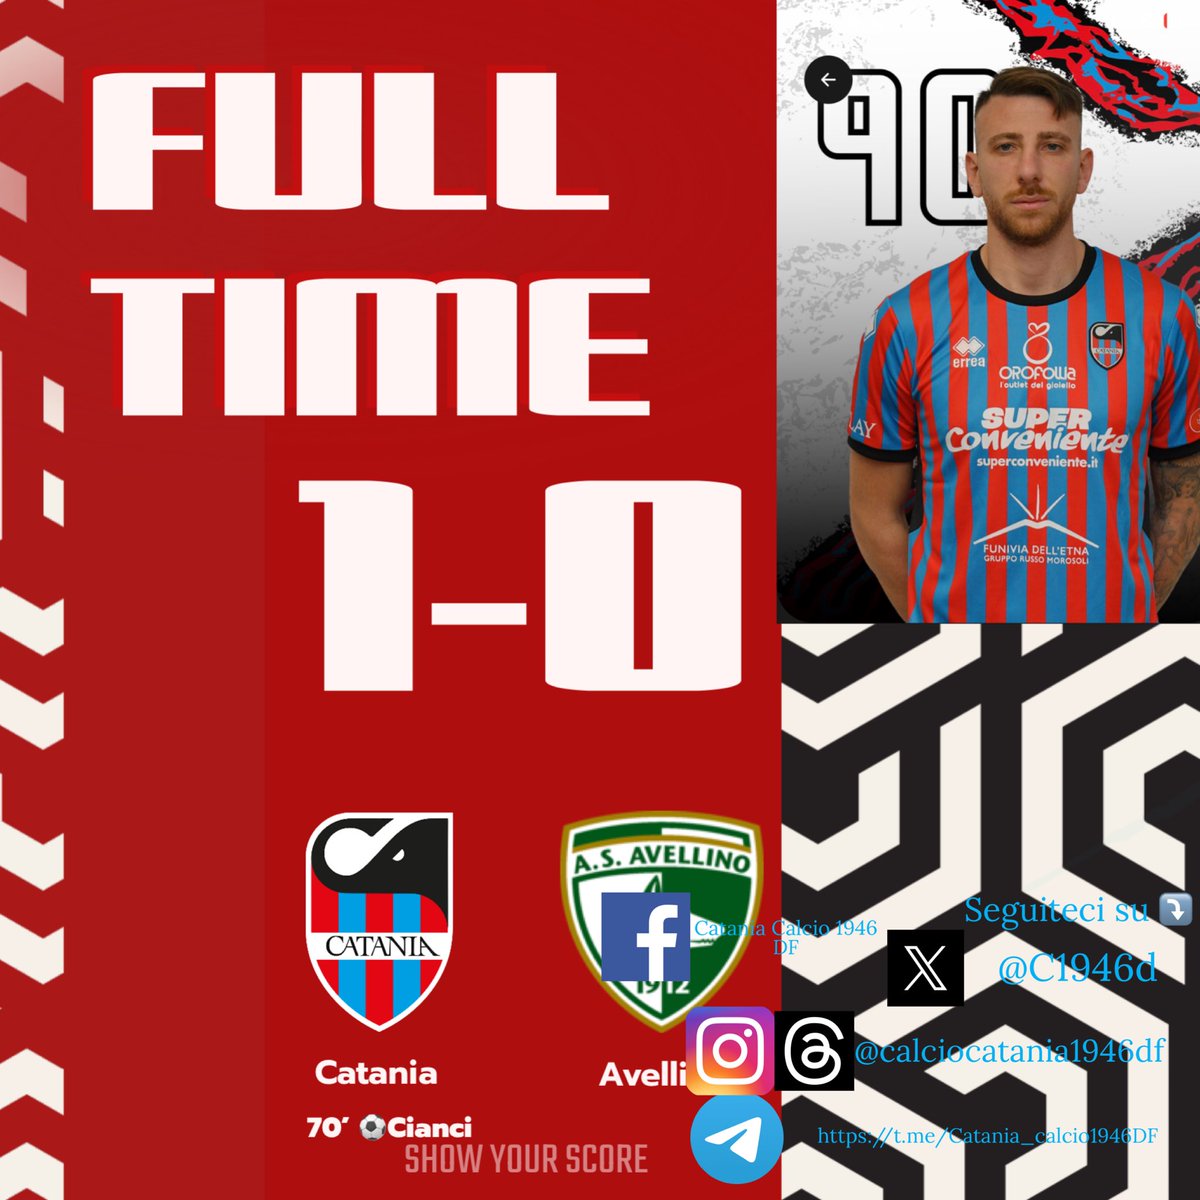 Full time :
Catania 1-0 Avellino
⚽️70’ Cianci 
#CataniaAvellino #SerieCNow 🔵🔴⚽️🐘 #forzacatania